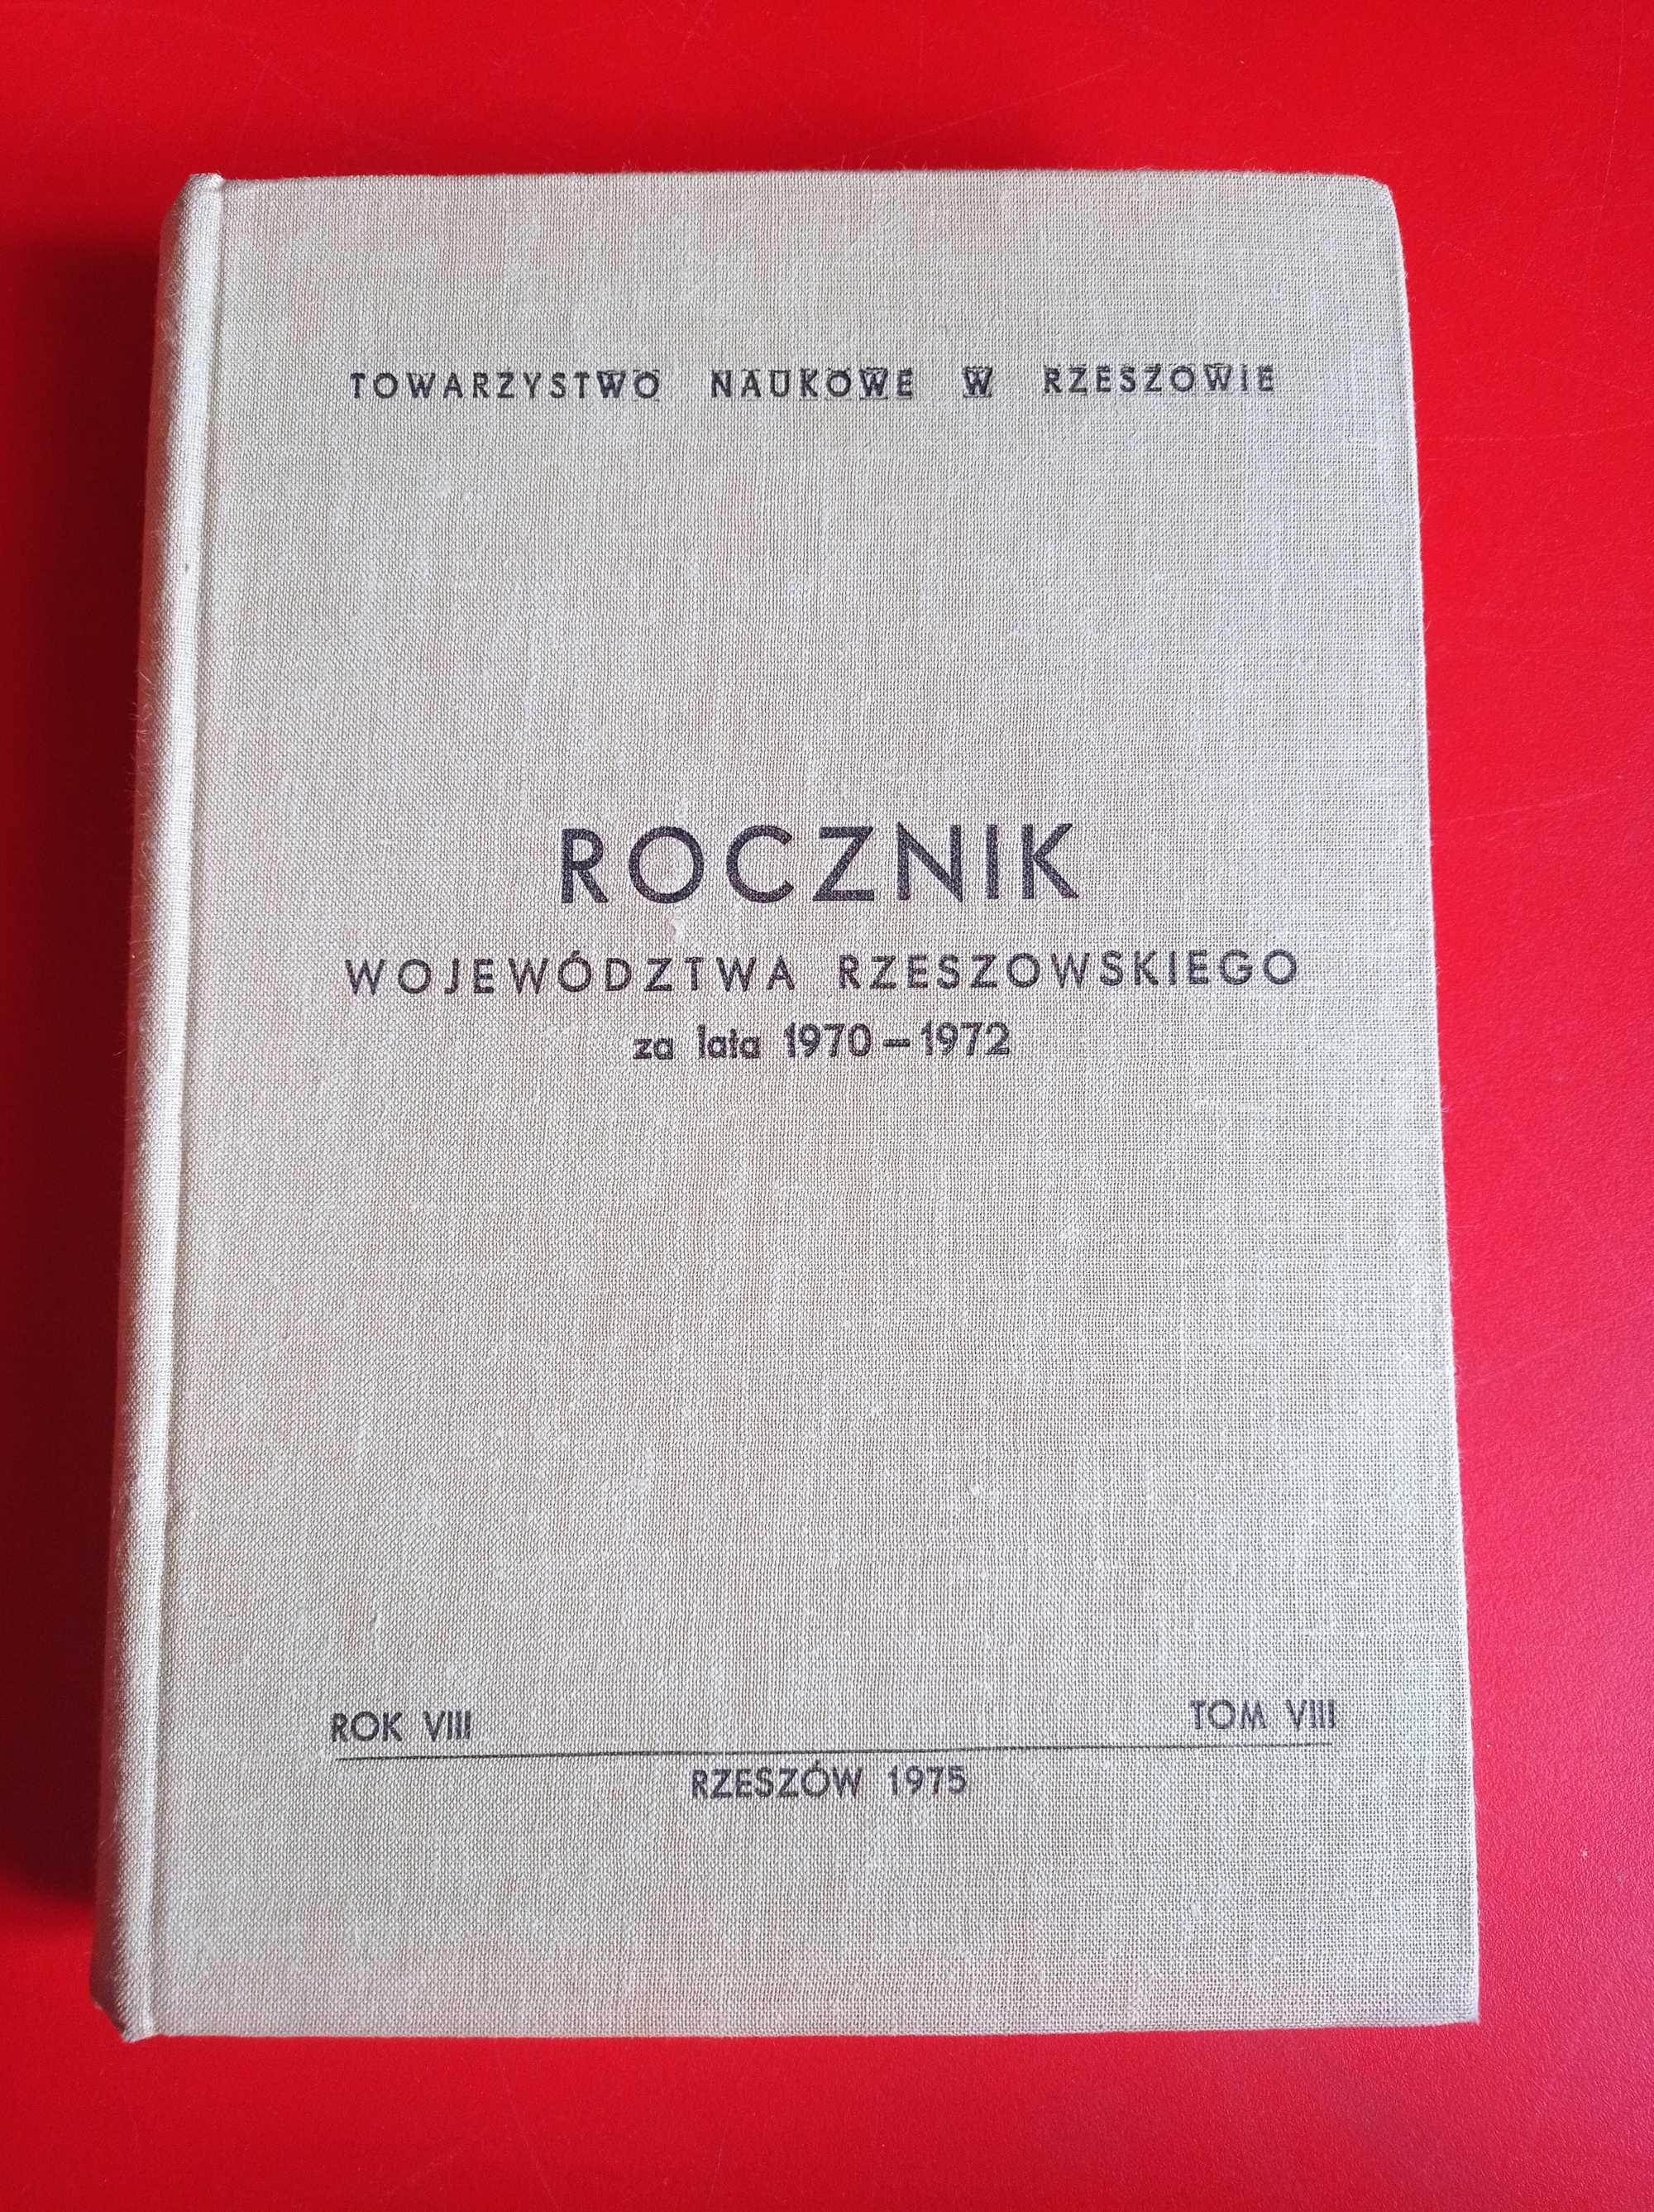 Rocznik województwa rzeszowskiego 1970 - 1970, rok VIII